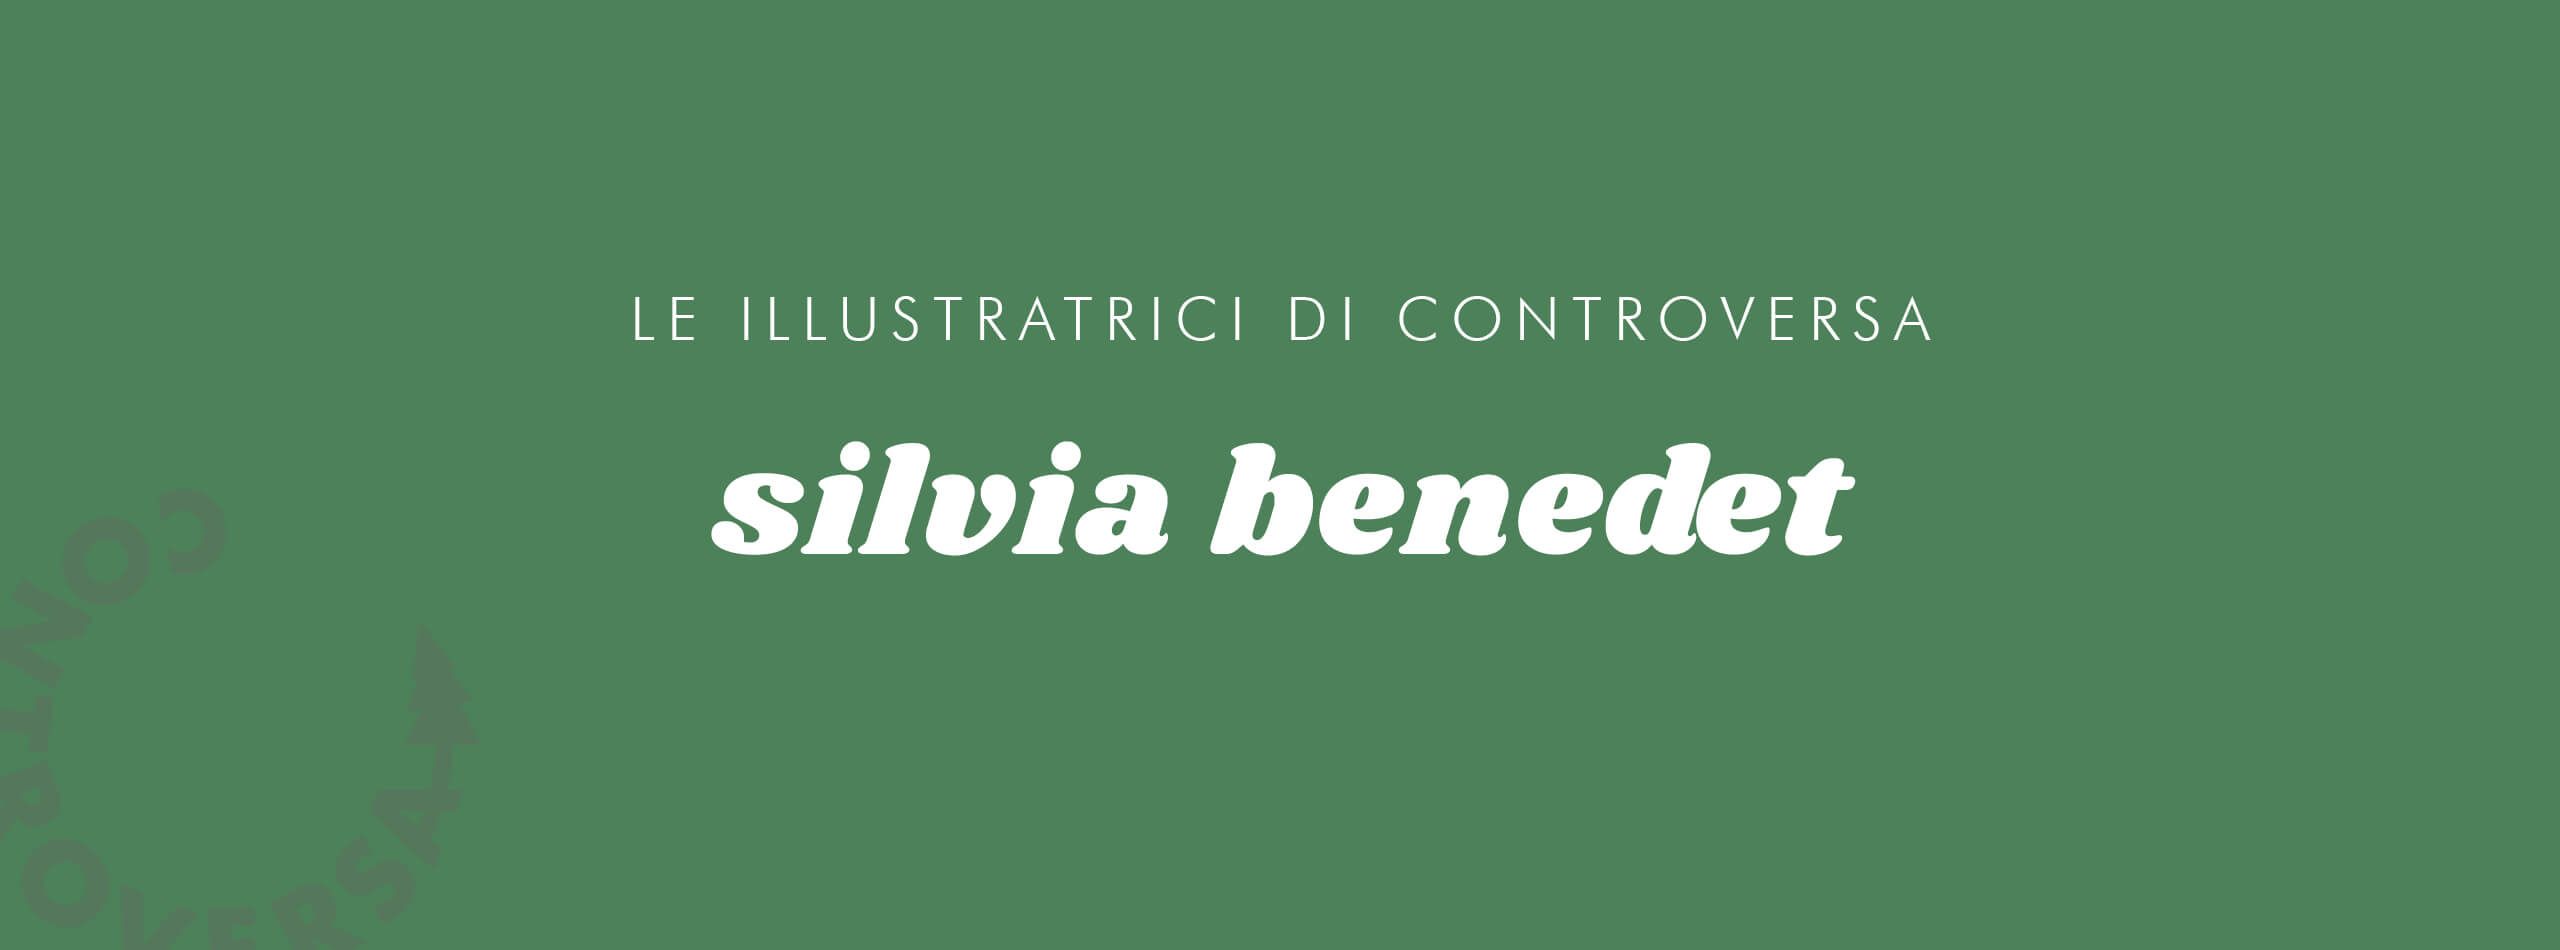 Controversa incontra Silvia Benedet